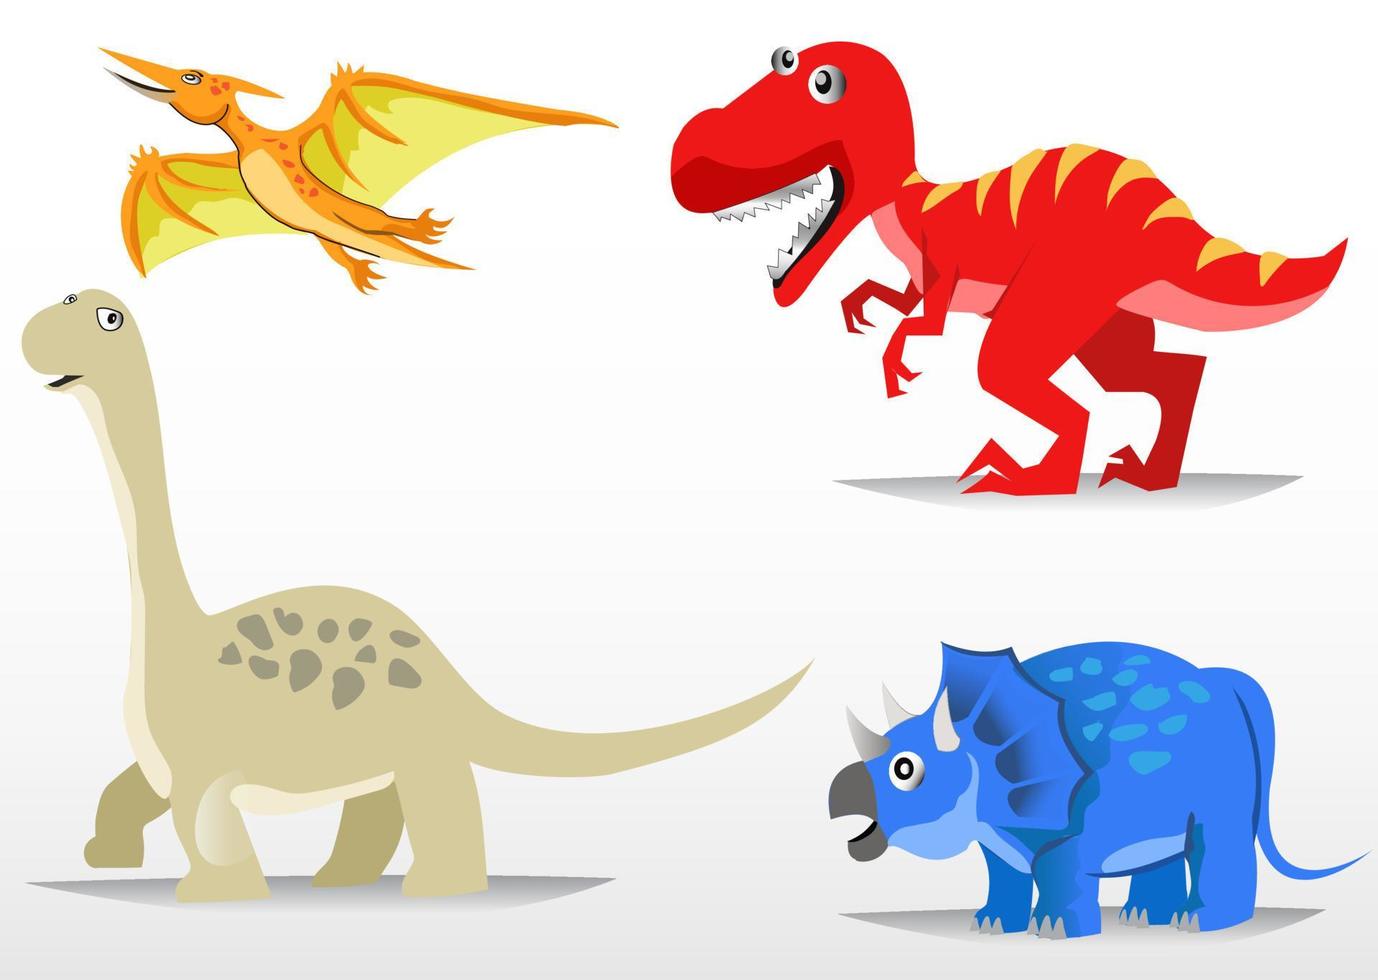 varios personajes de dibujos animados de dinosaurios vector libre